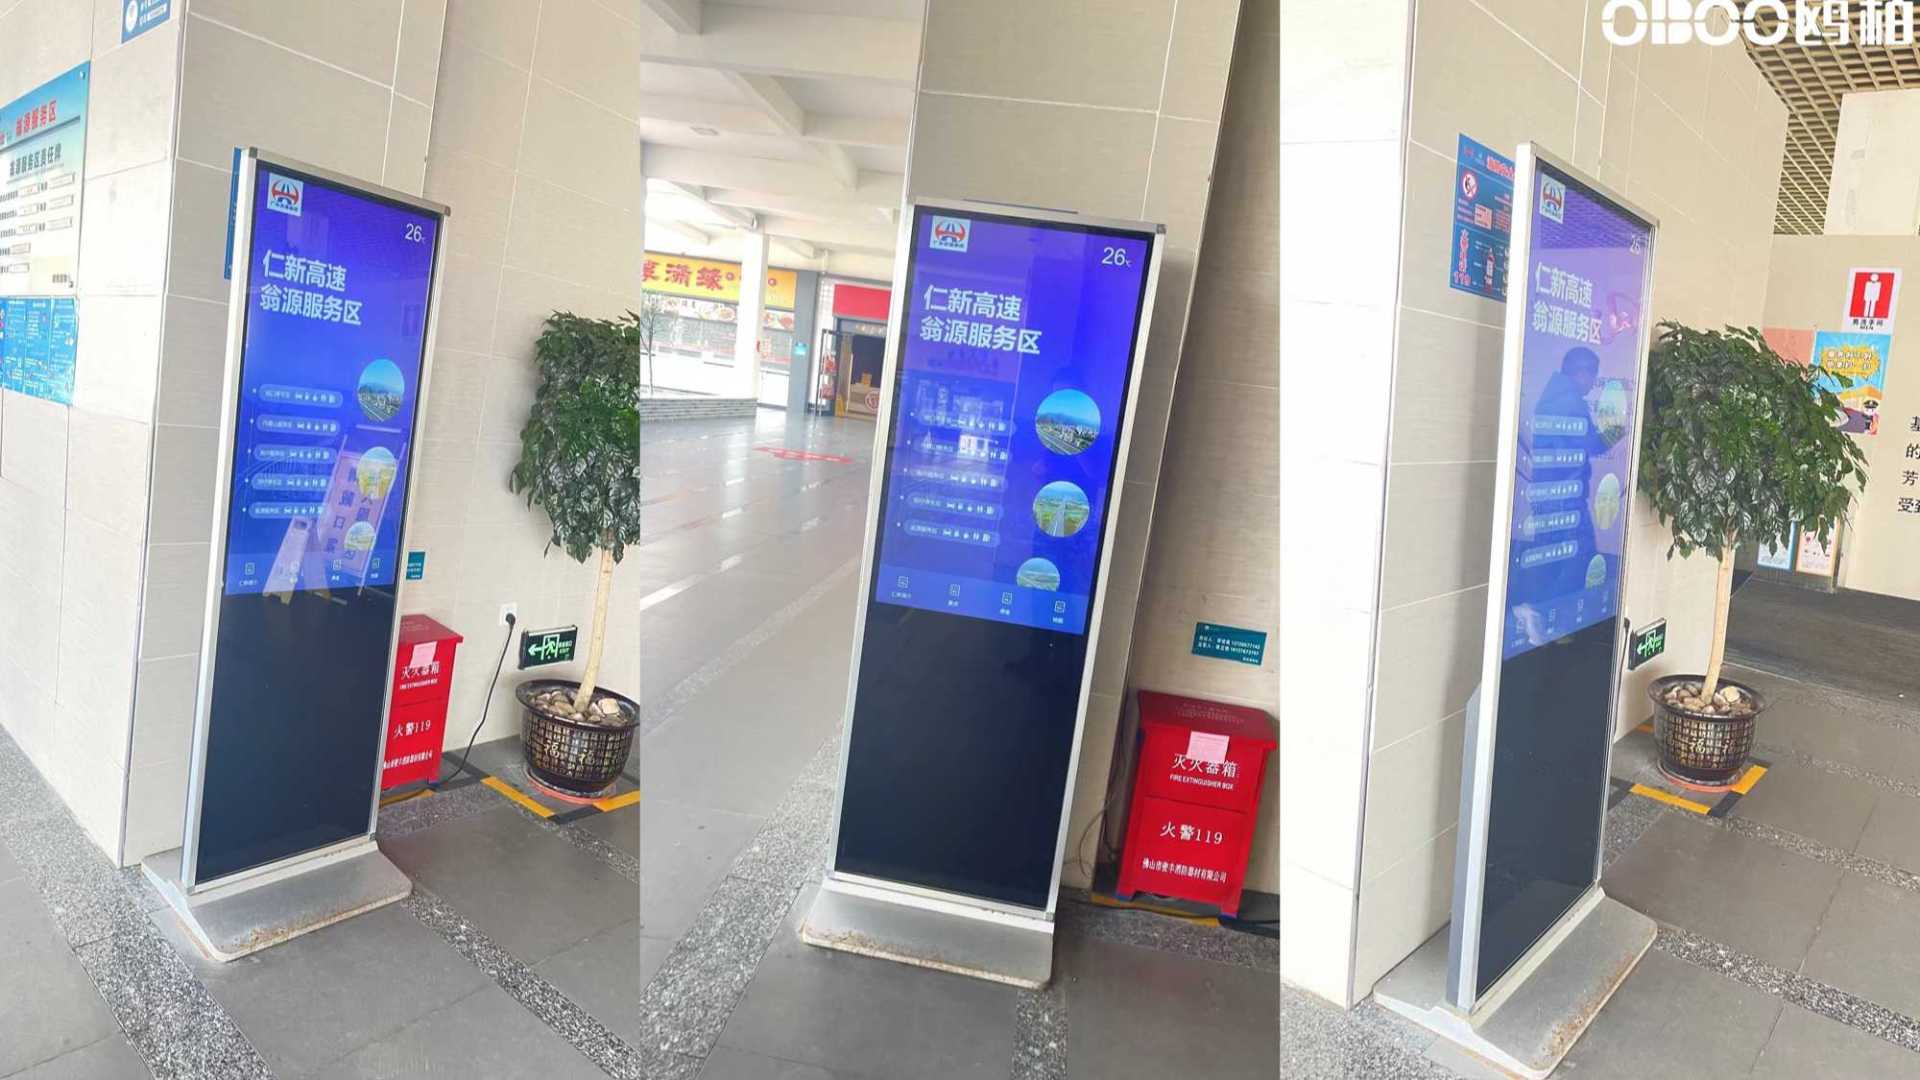 OBOO鸥柏丨中国高速服务区加油站应用触摸屏查询一体机智慧便民